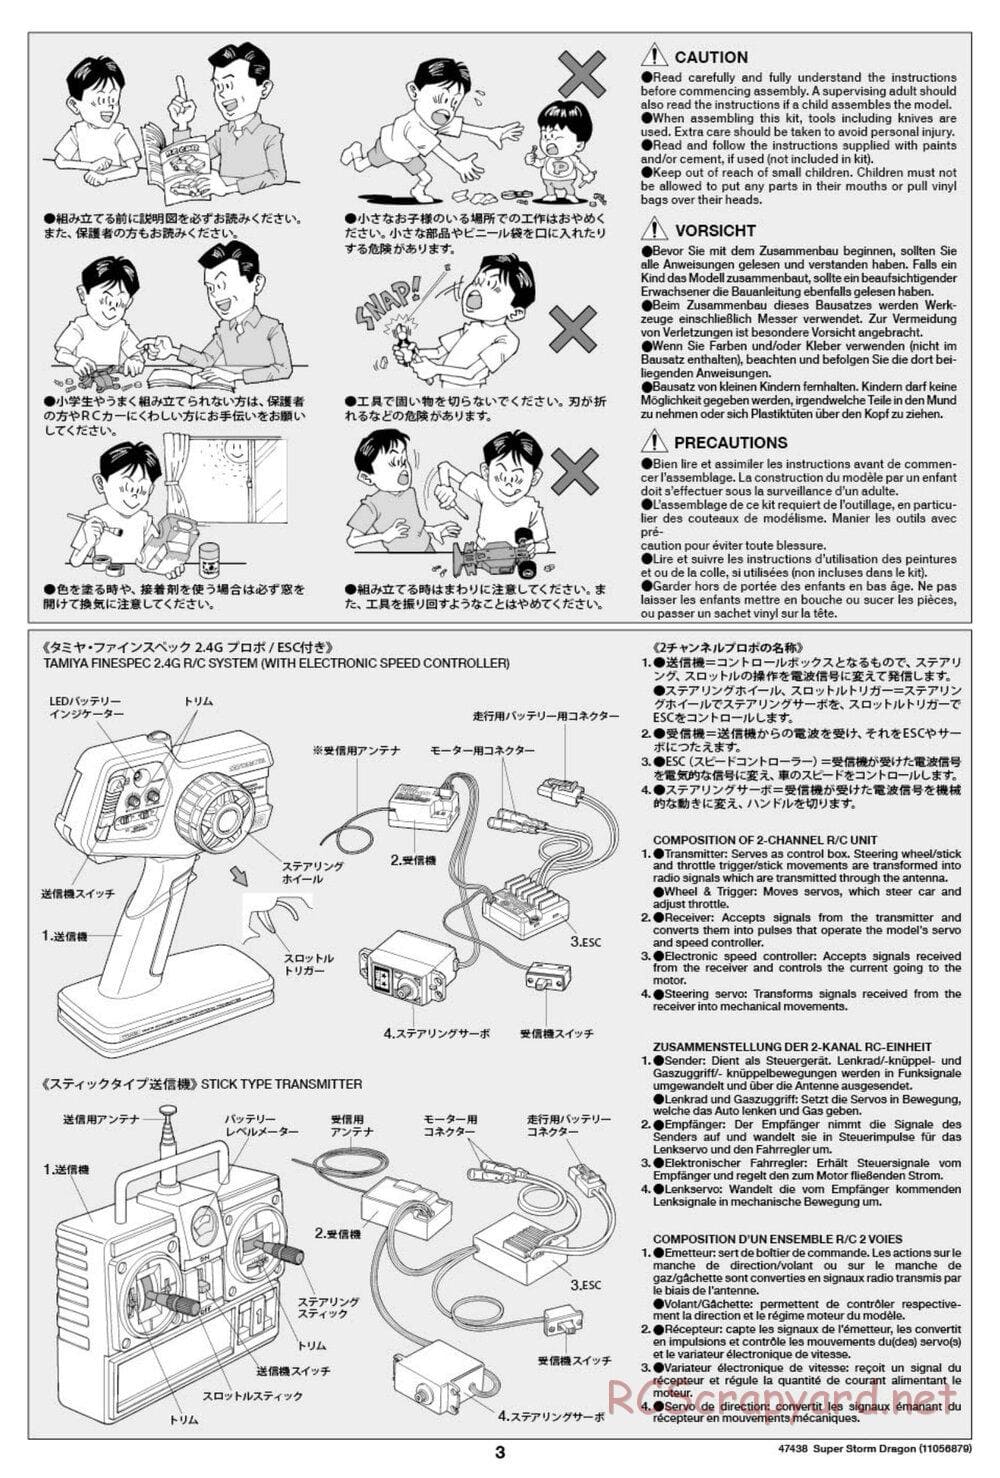 Tamiya - Super Storm Dragon Chassis - Manual - Page 3